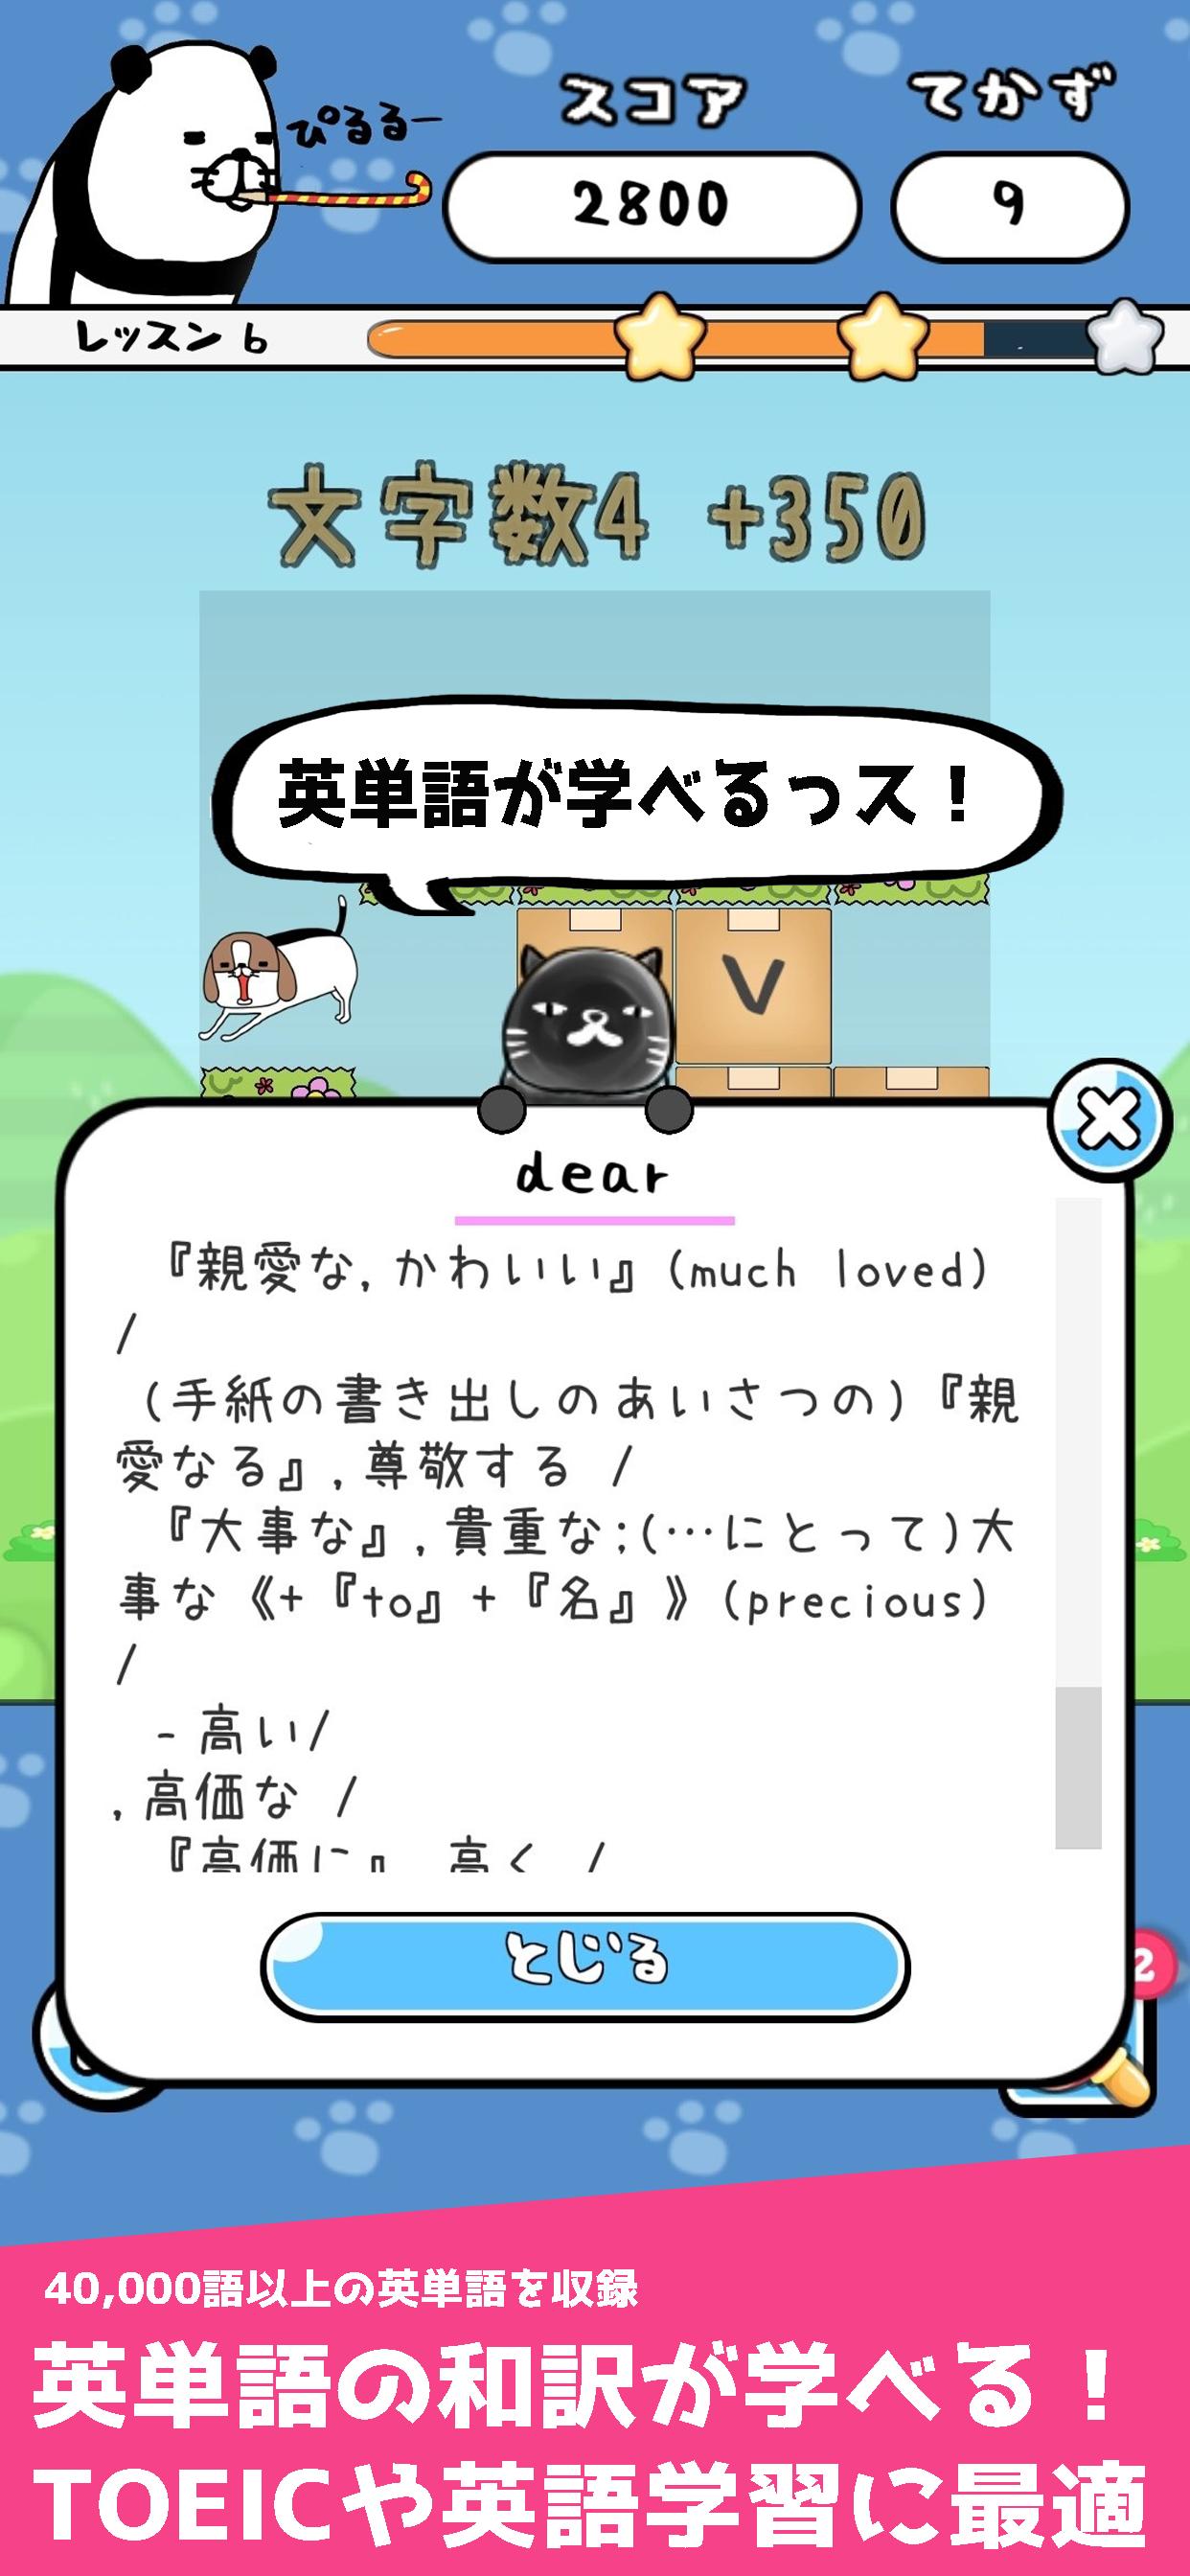 パンダと犬の英単語パズル For Android Apk Download